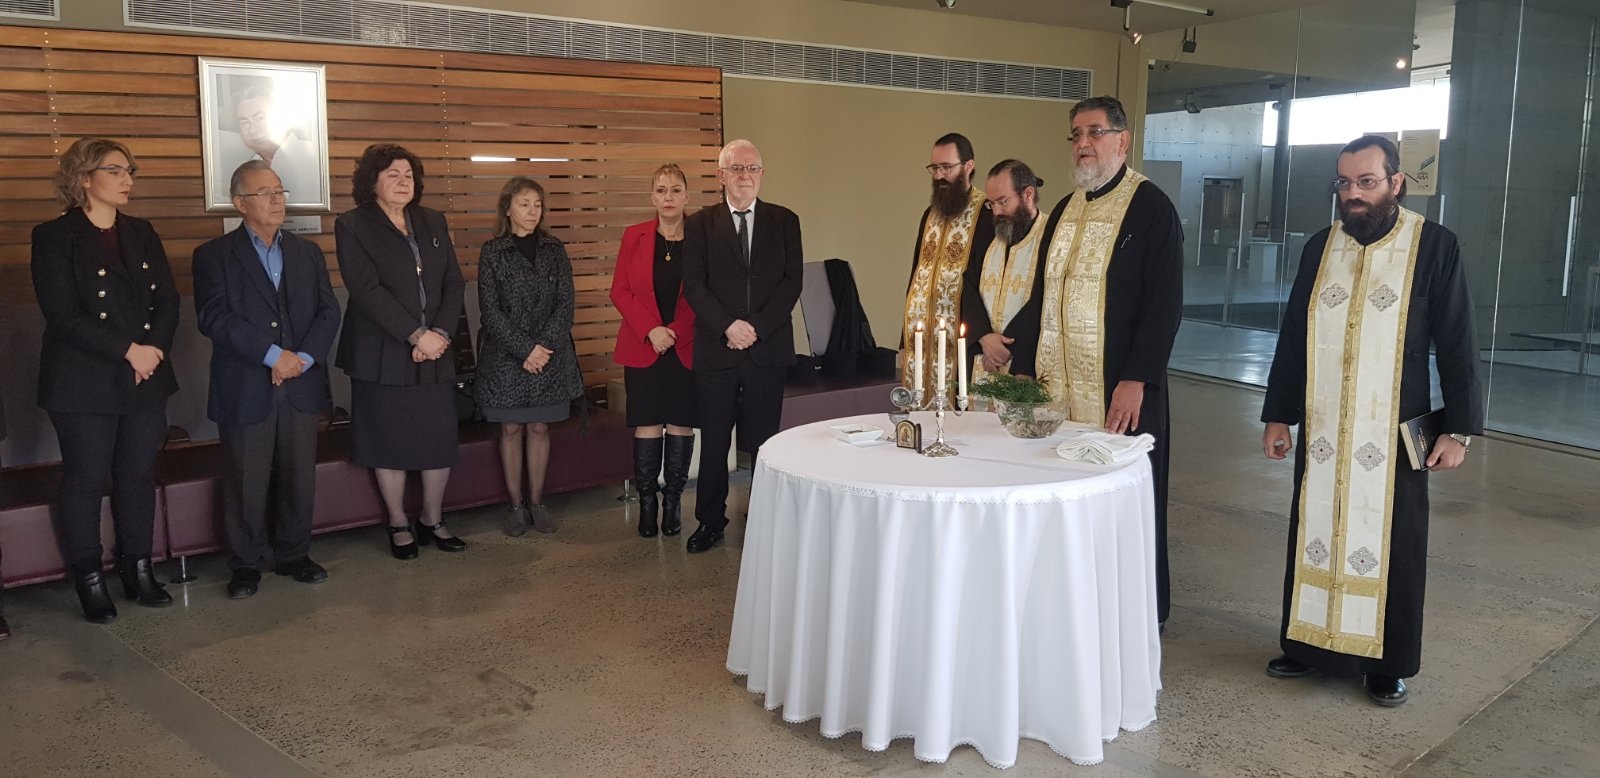 Αγιασμός για το καλό της νέας χρονιάς πραγματοποιήθηκε στο Δήμο Αθηένου